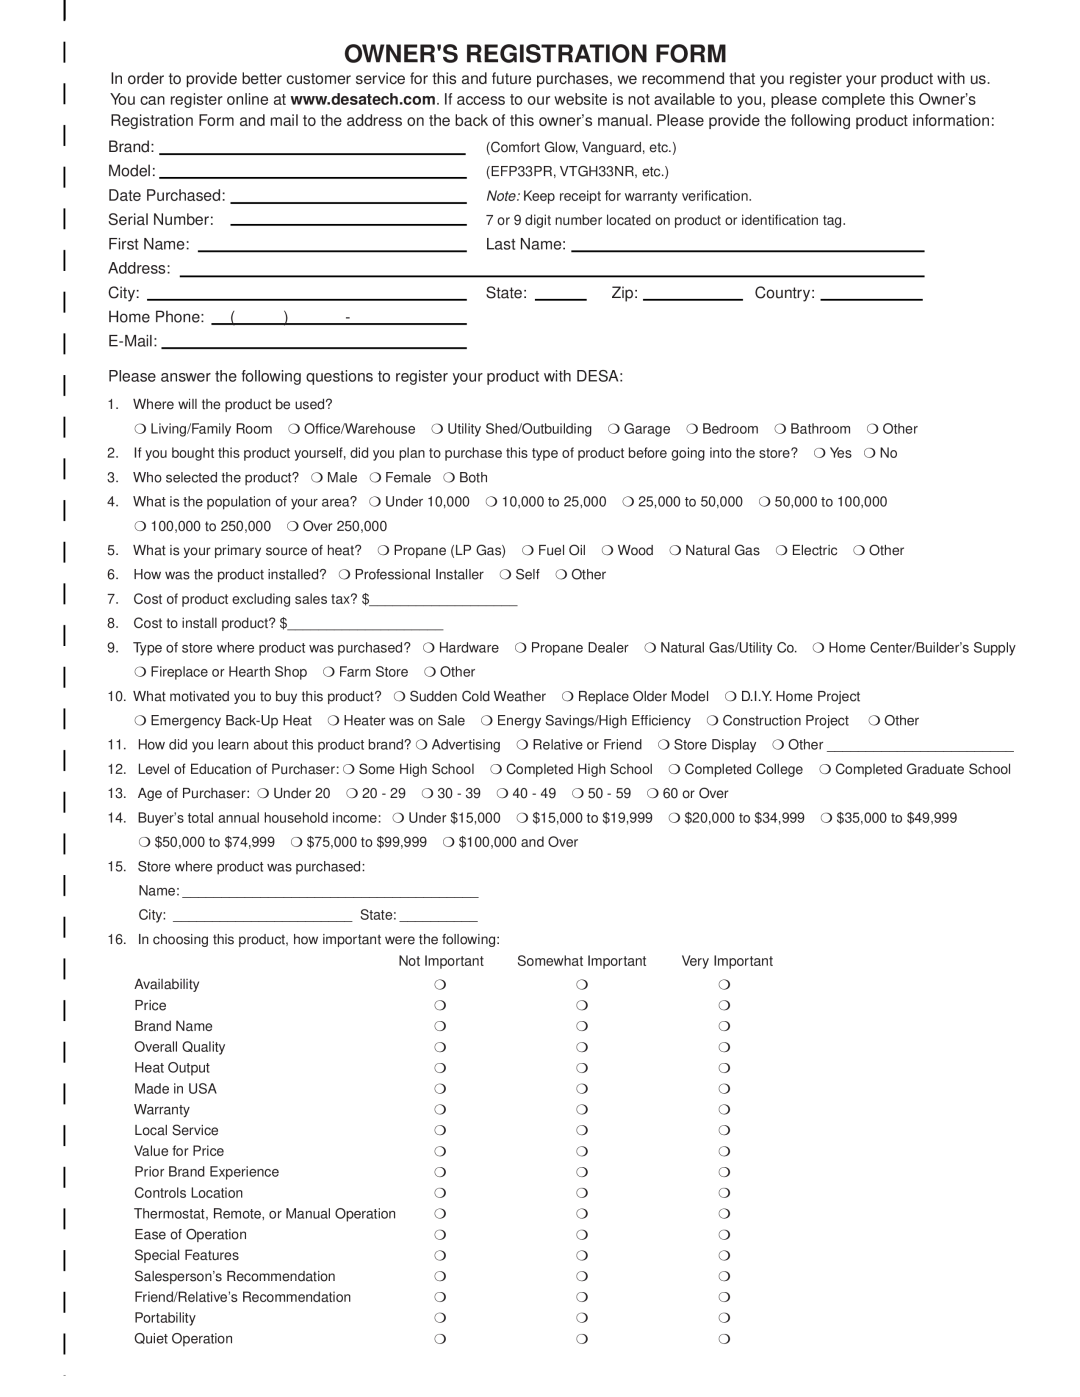 Desa VTD-24N-PDG, VTD-24N-BTB, VTD-18P-PDG installation manual Owners Registration Form 